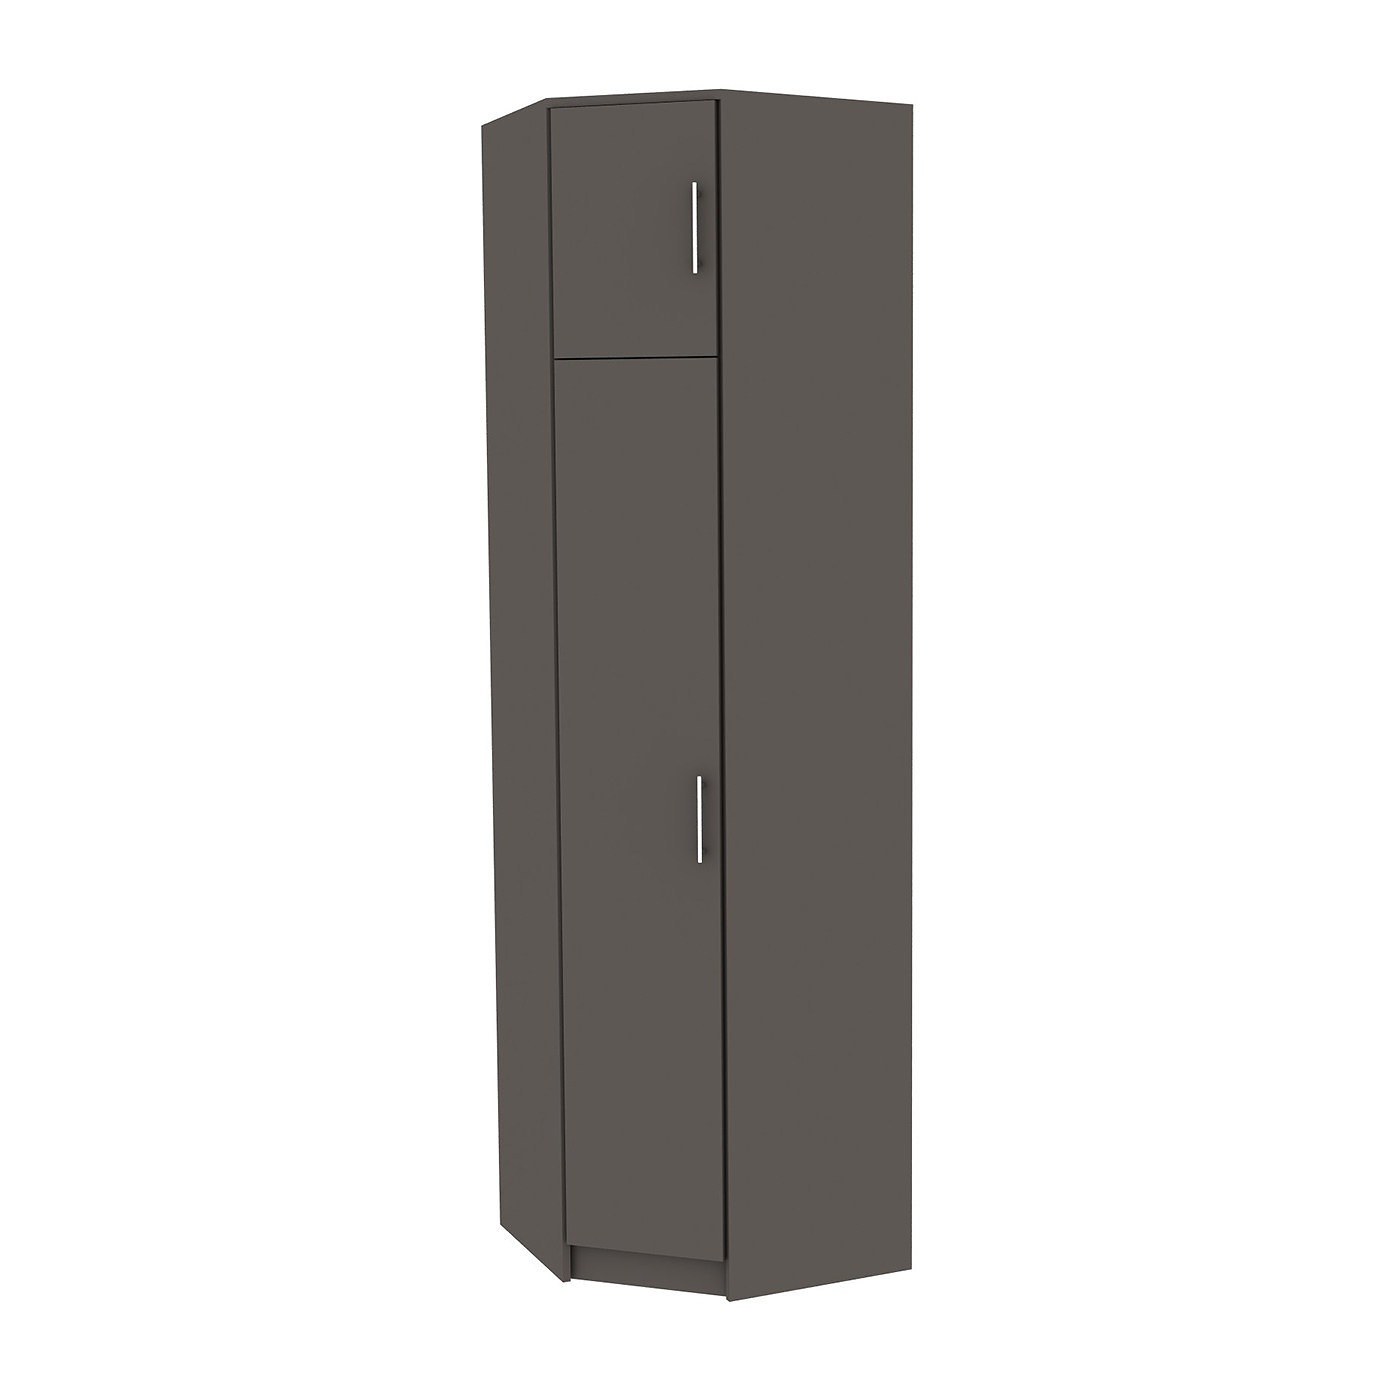 Шкаф угловой Стаден-201p современный для прихожей - фото 1 large